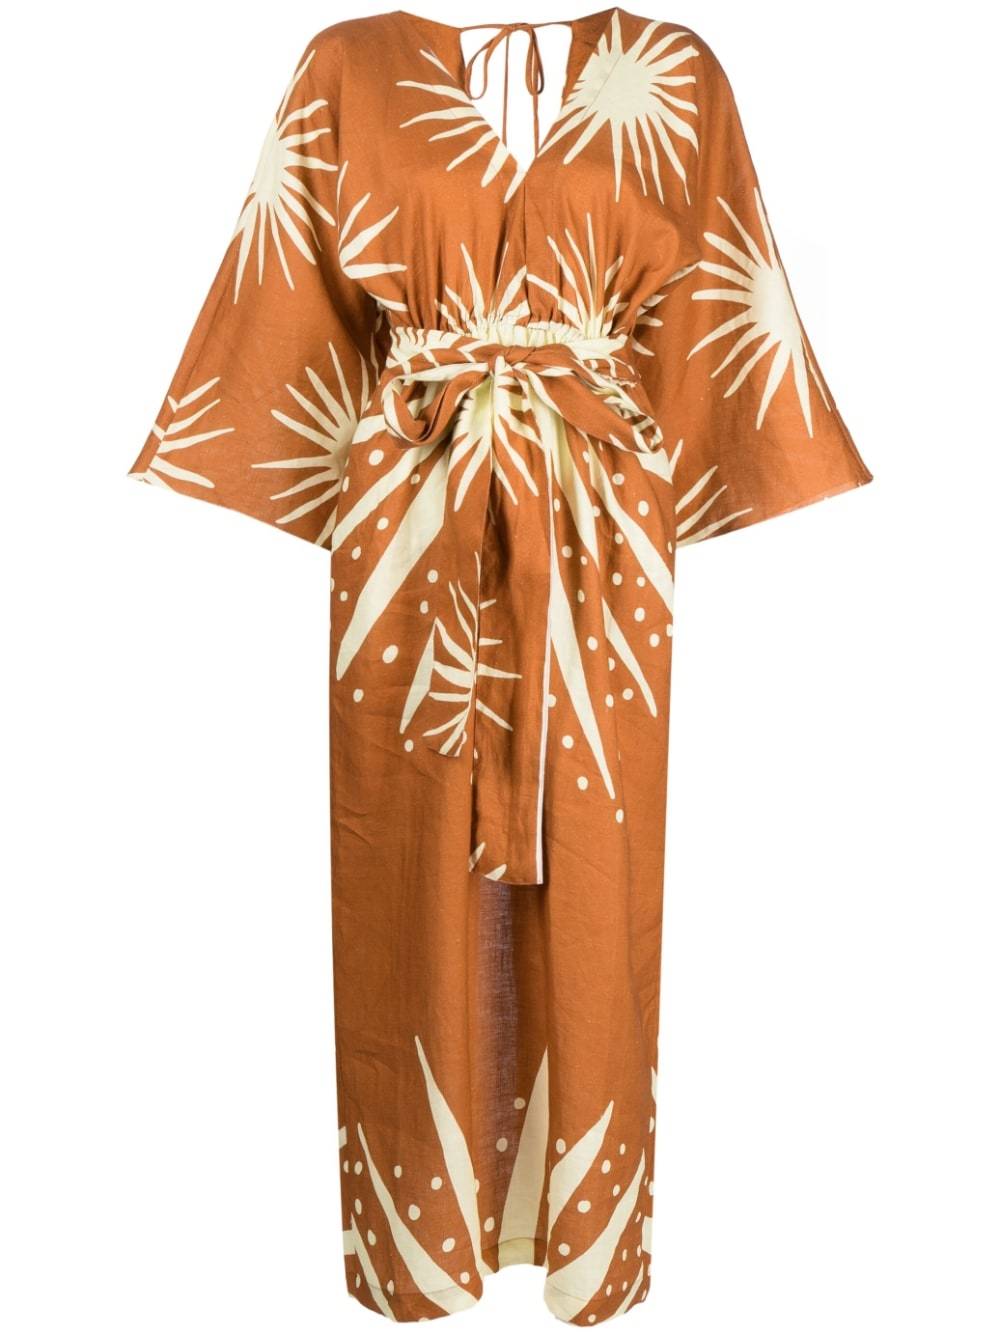 Vestido color caramelo con estampado márfil de Cala de la Cruz (894 euros).